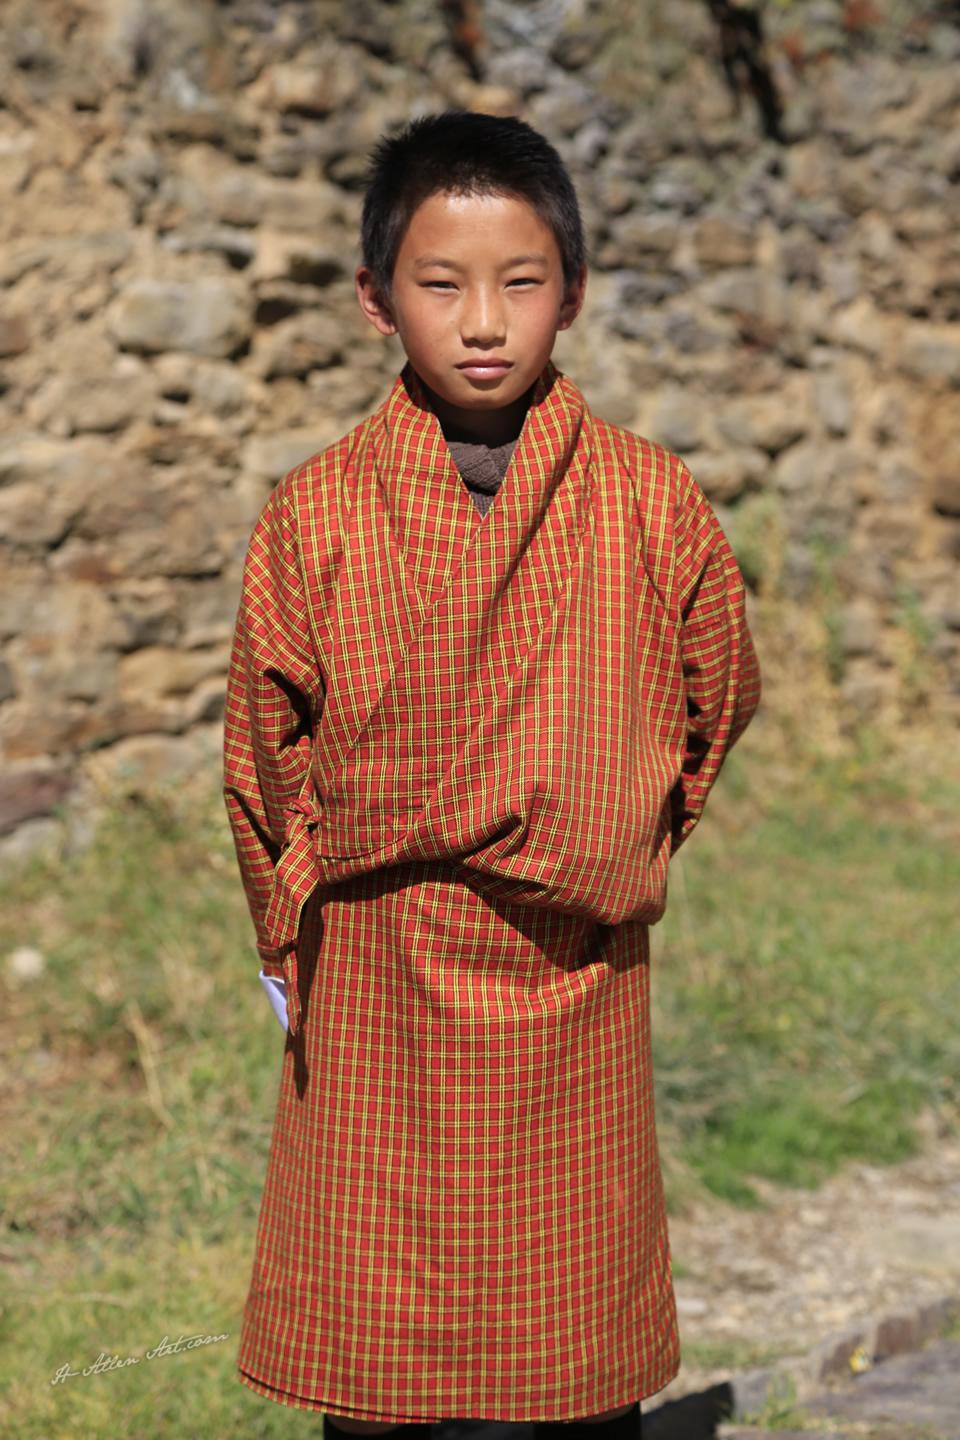 Bhutanese Boy II, Bumthang, Bhutan